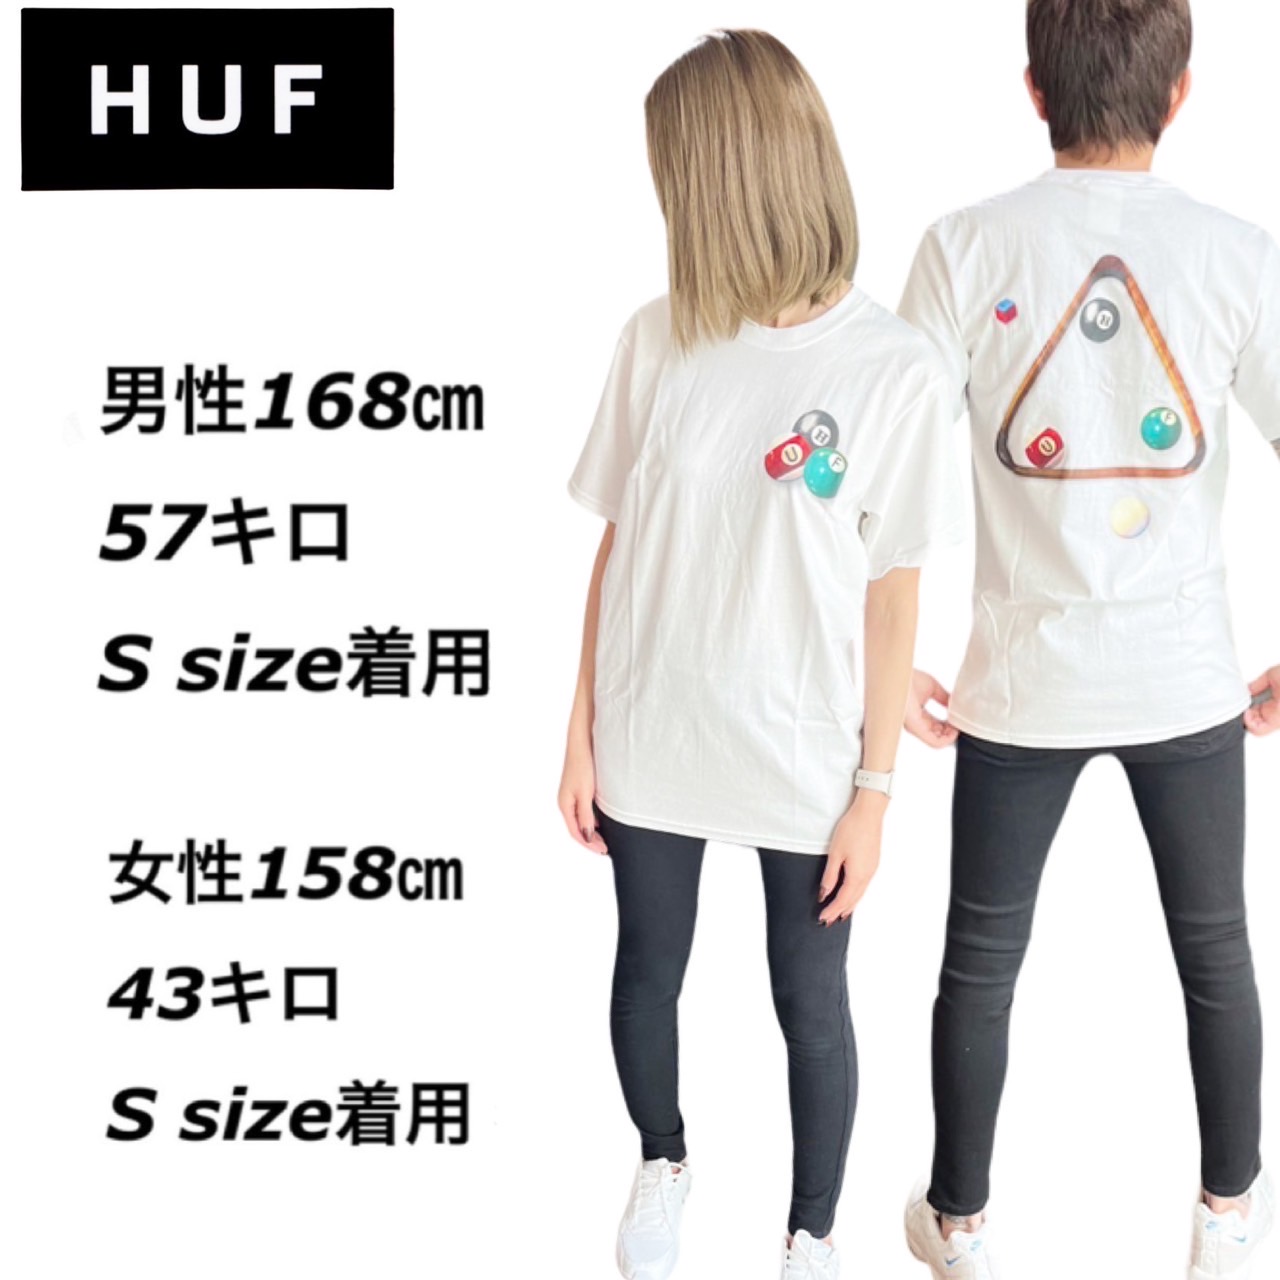 ハフ HUF 半袖 Tシャツ TS01728 ビリヤードロゴ バックロゴ メンズ 